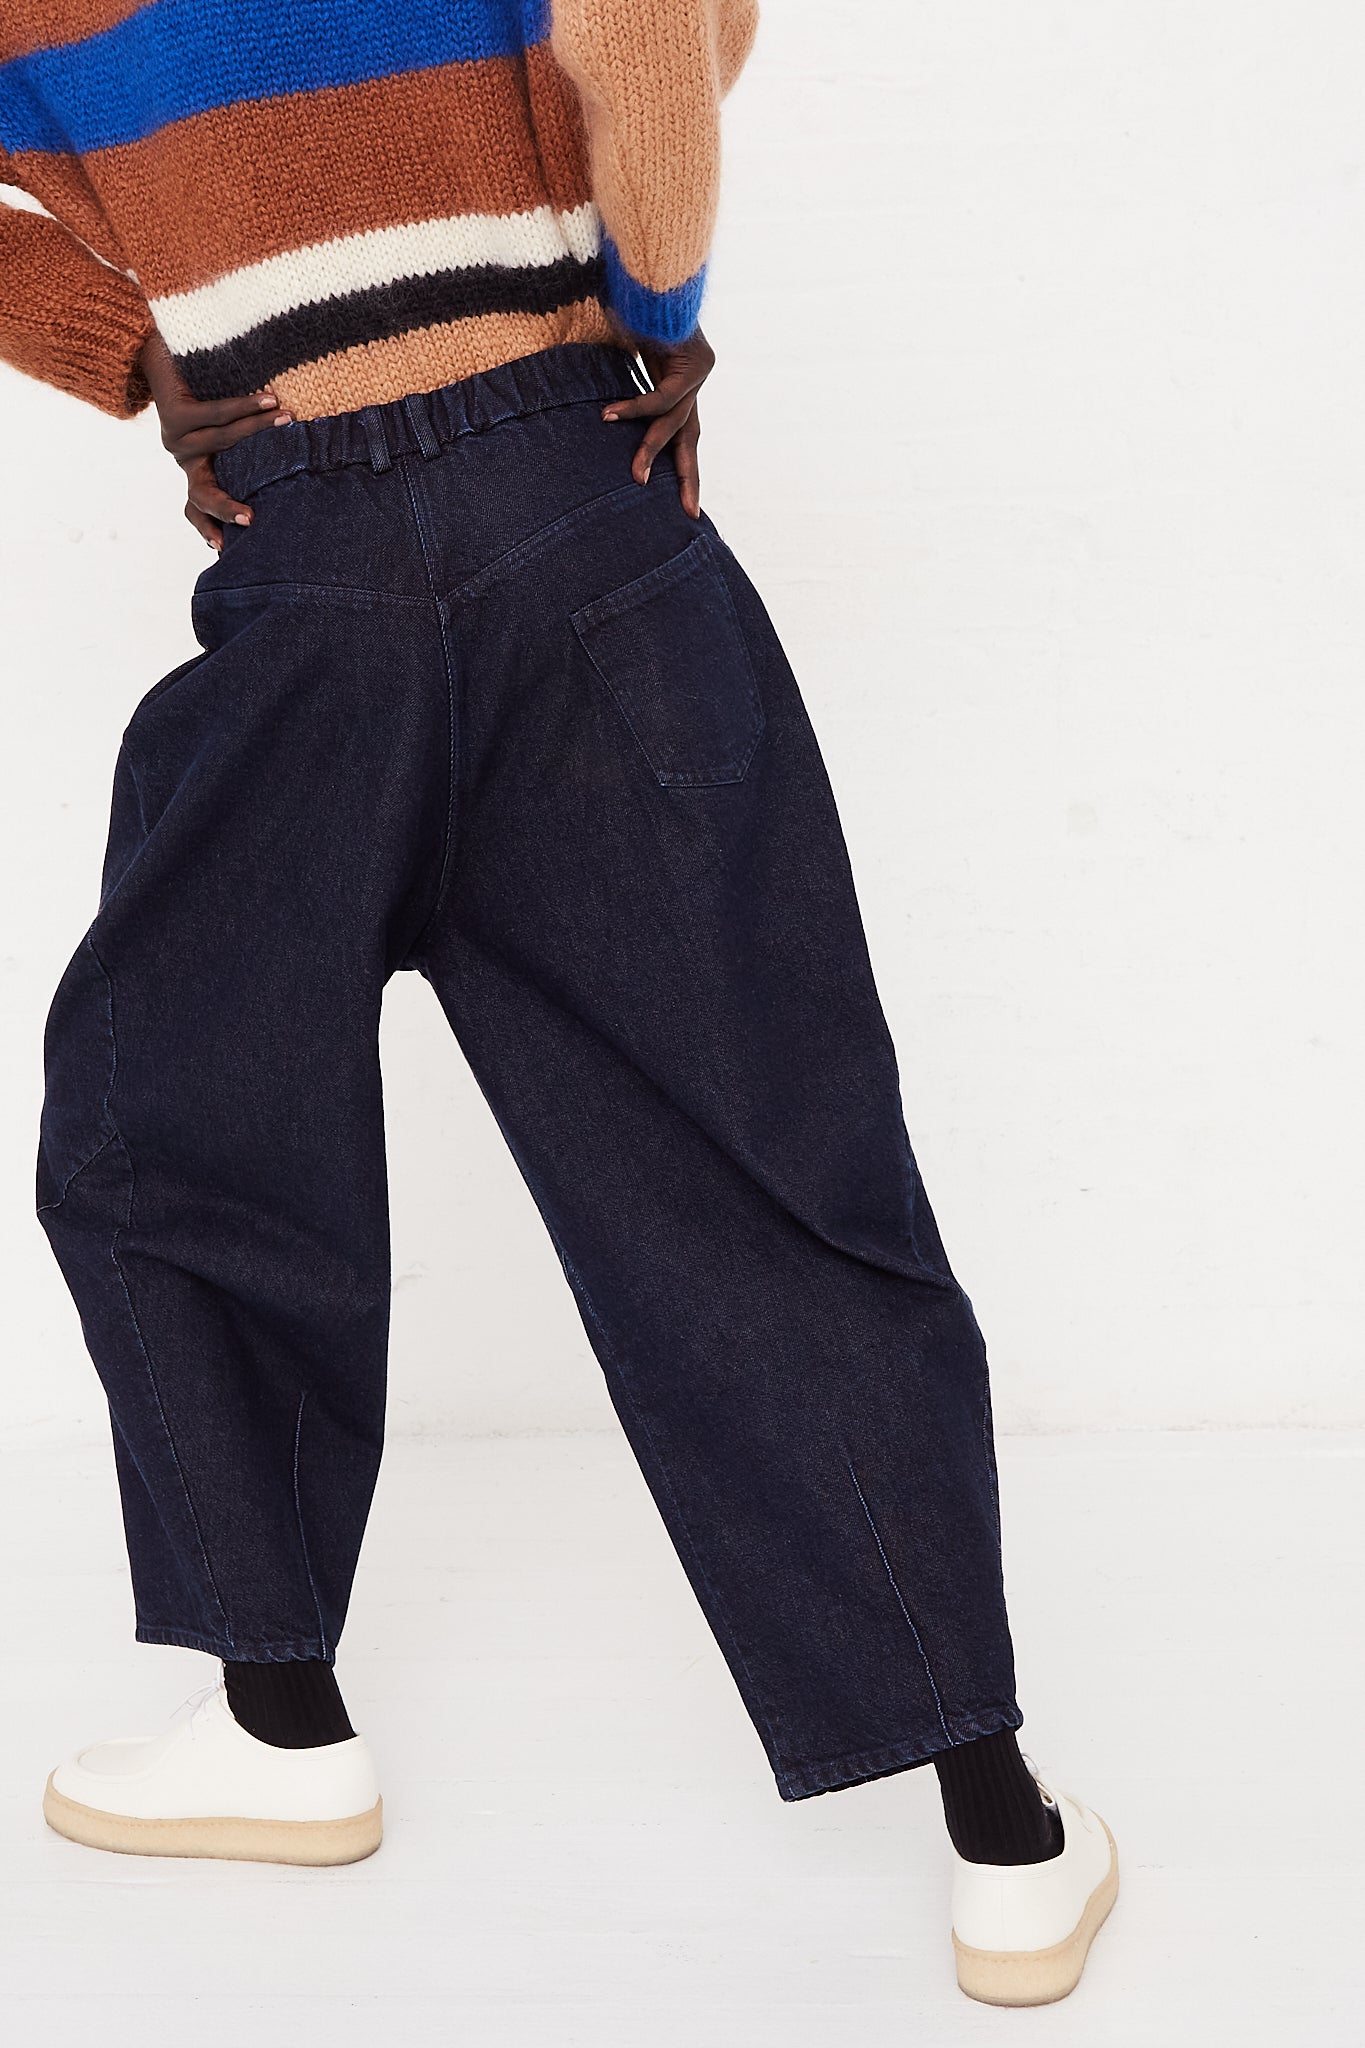 CORDERA Baggy Pant in Denim | Oroboro Store | back image upclose of denim on model